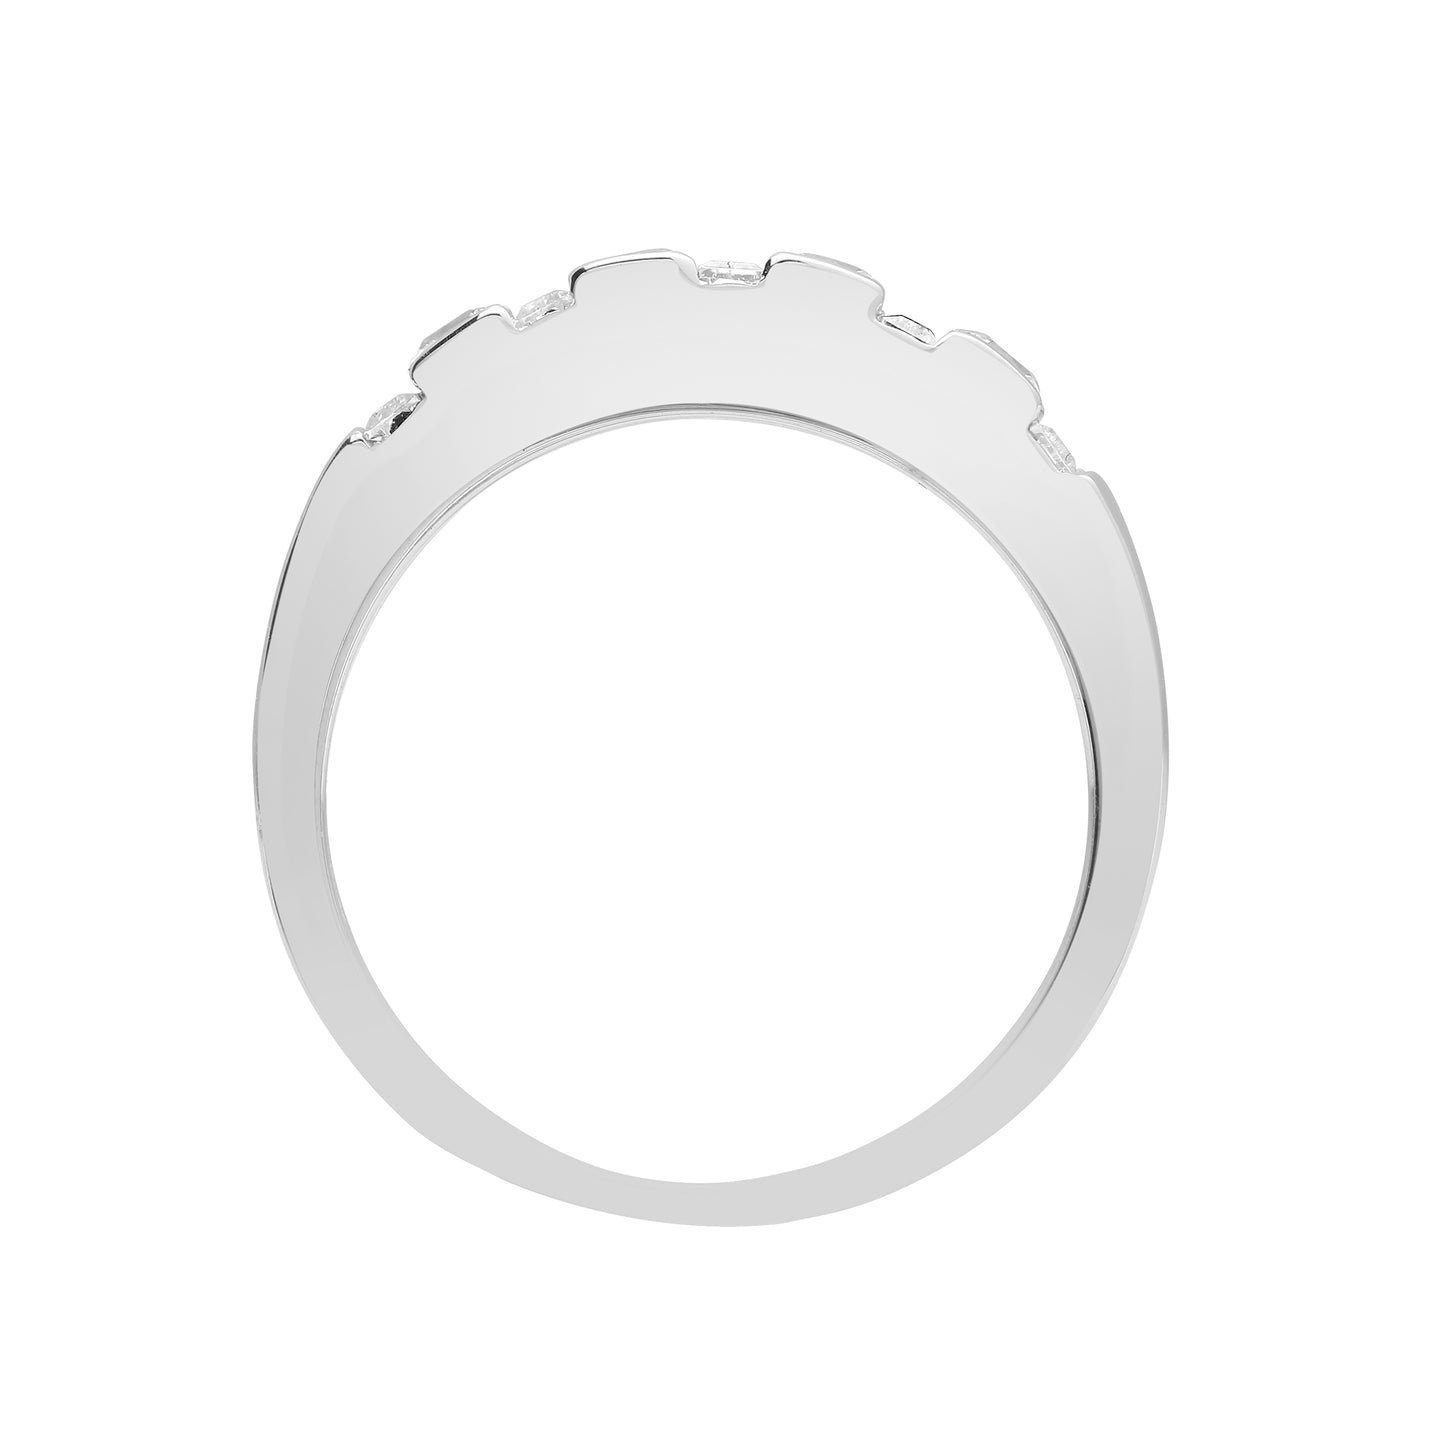 18ct White Gold  Diamond Alternating Bars Eternity Ring 3.5mm - 18R925